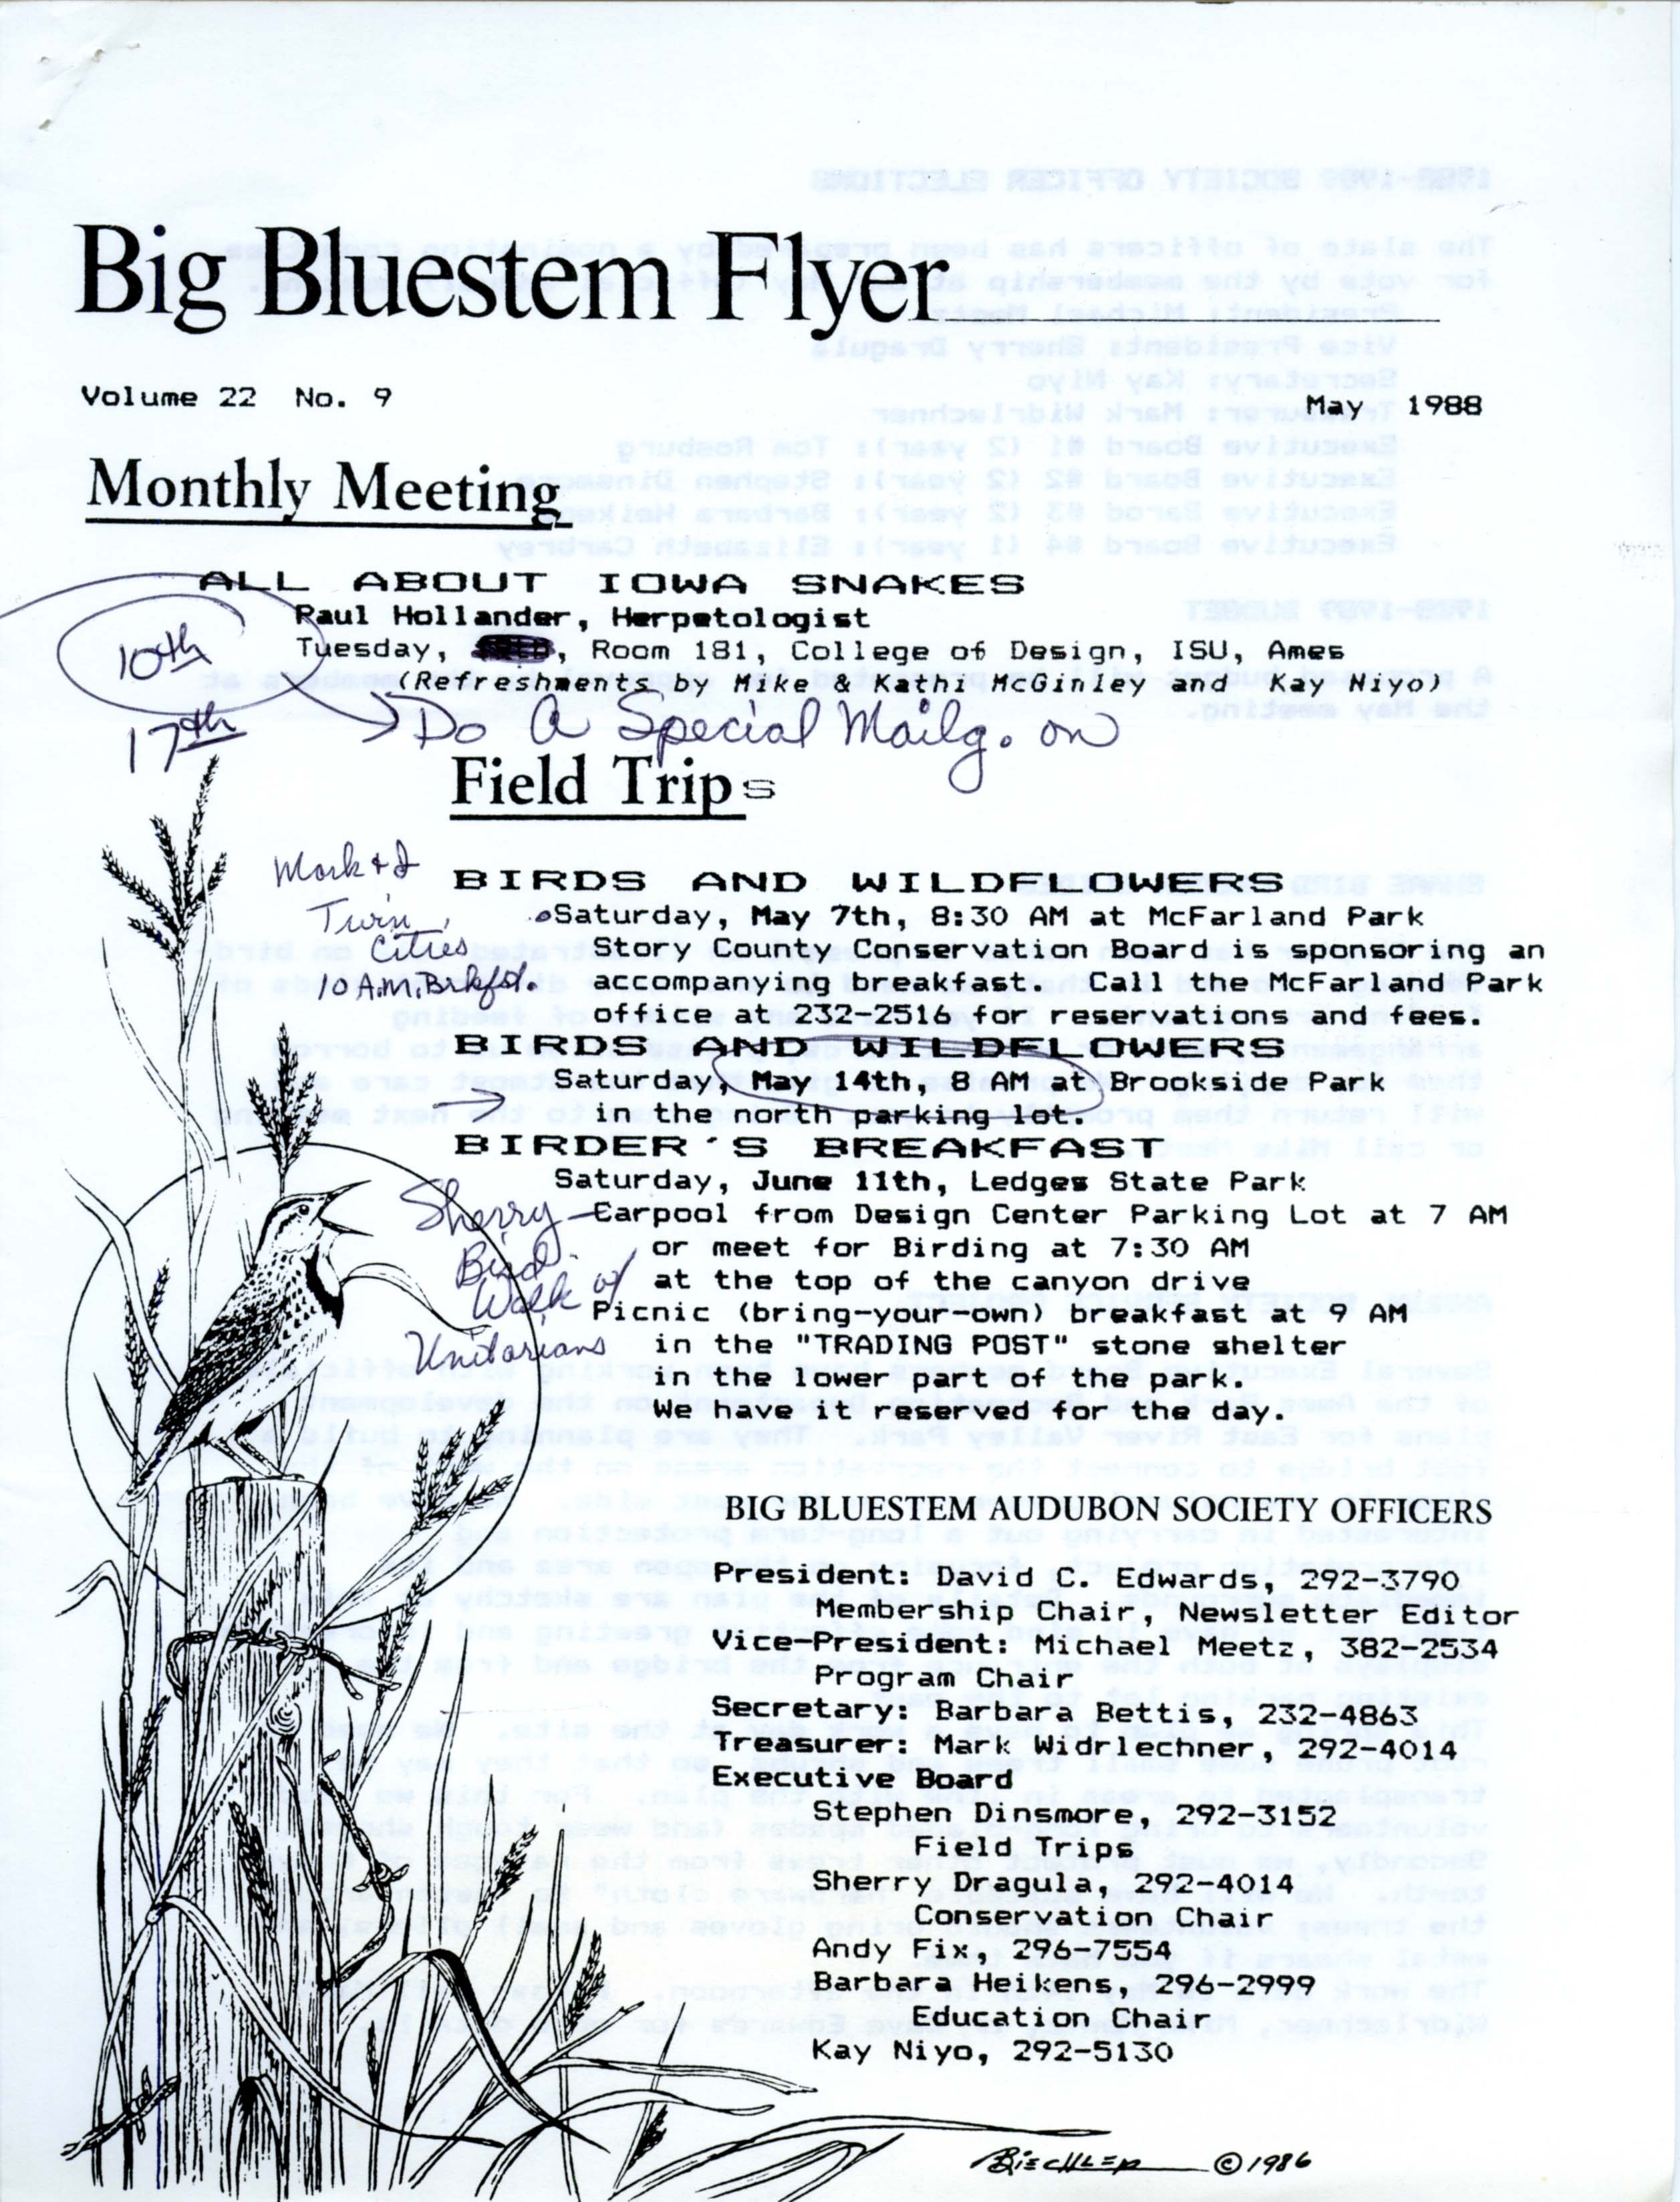 Big Bluestem Flyer, Volume 22, Number 9, May 1988